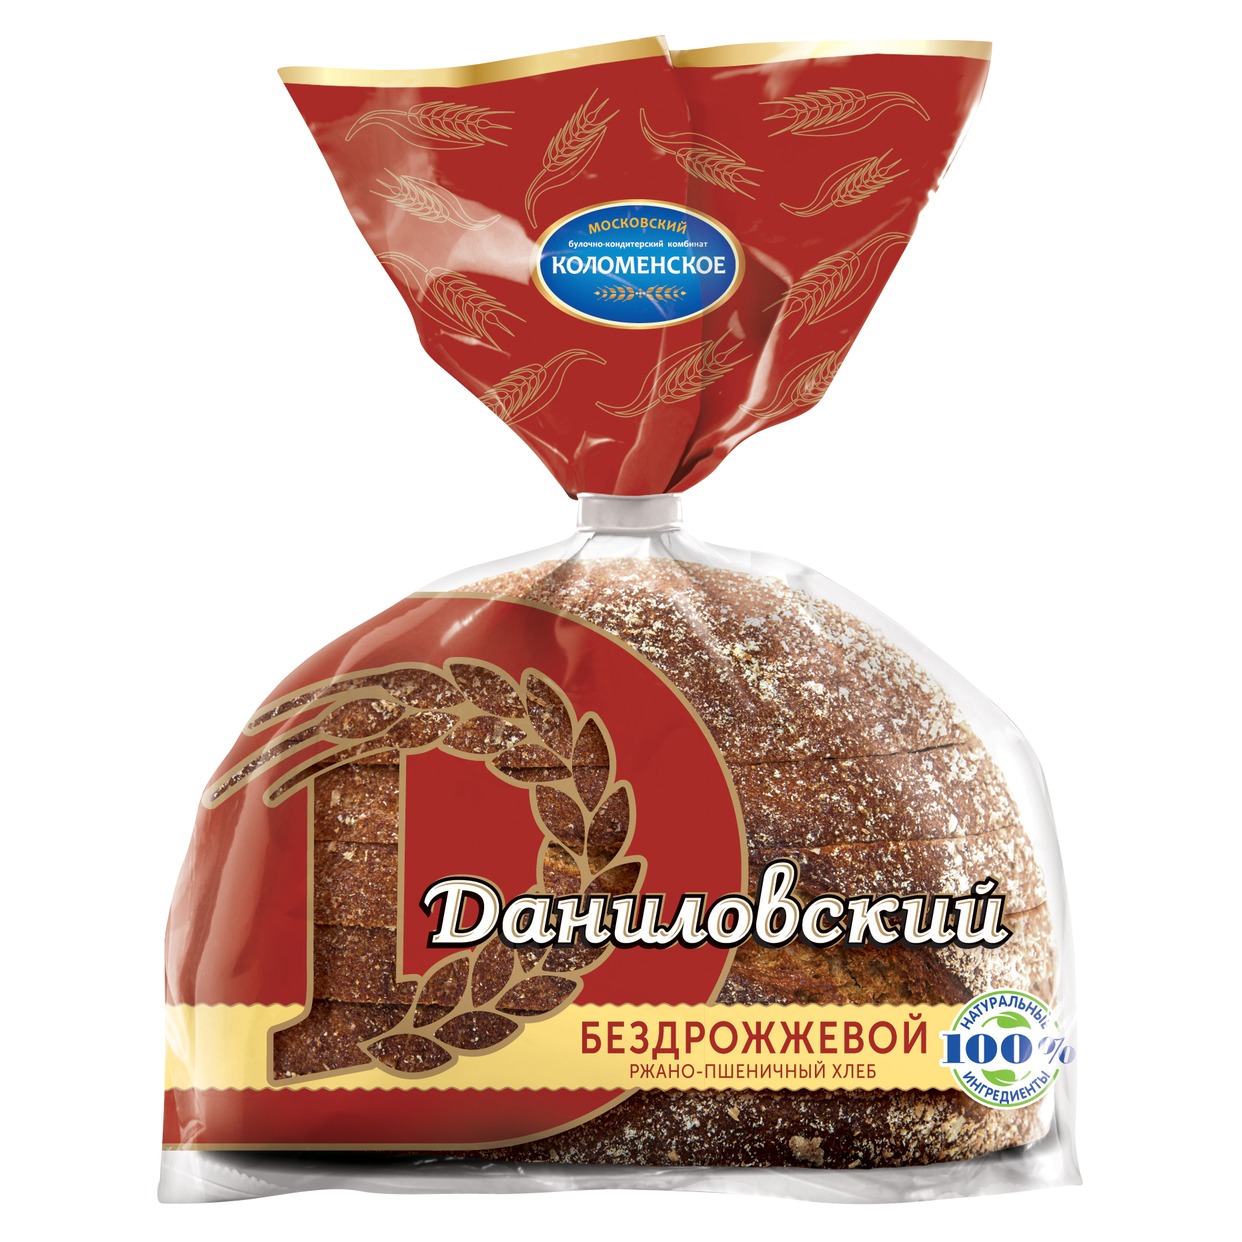 Хлеб Ржано-пшеничный, Даниловский, 300 г